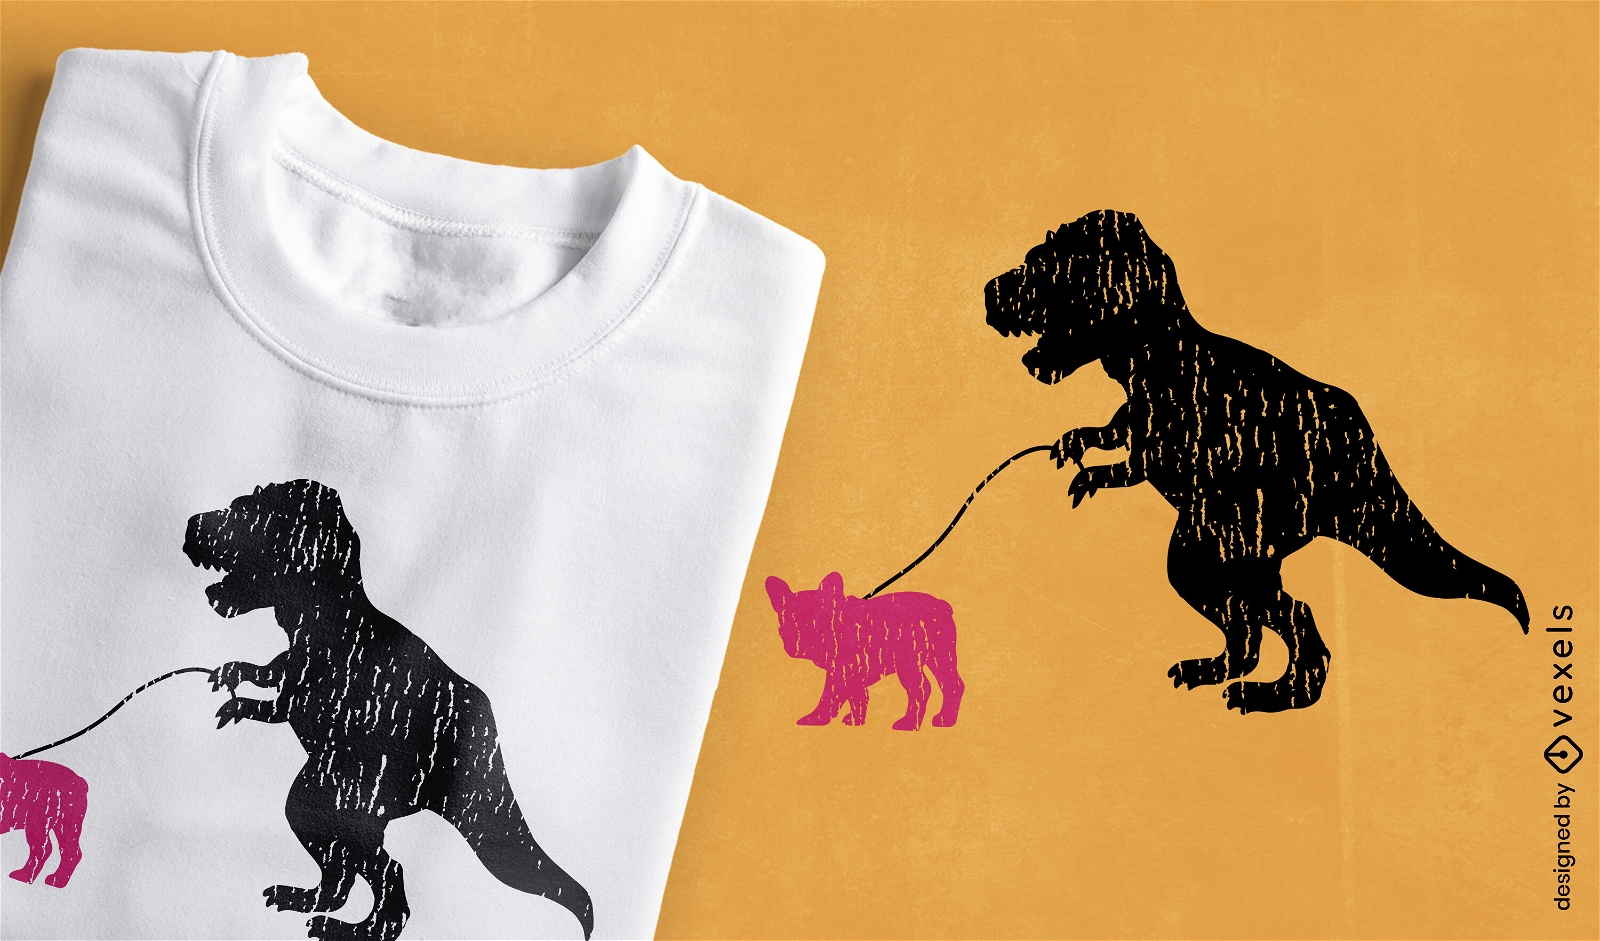 T-rex dinosaur walking a dog t-shirt design